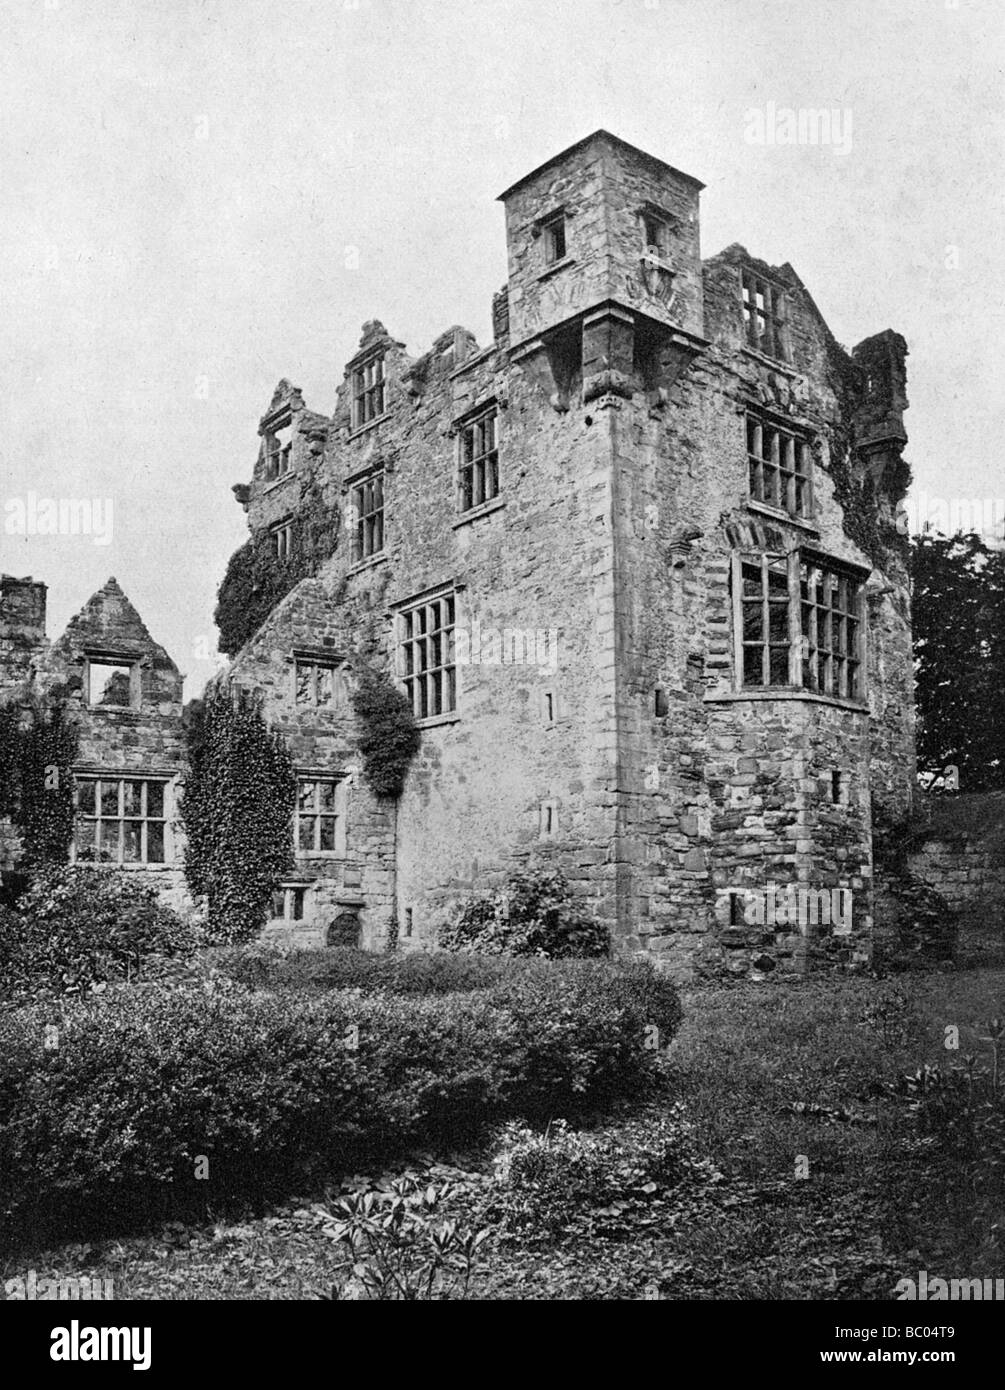 Castello di Donegal, Irlanda, 1924-1926. Artista: W Lawrence Foto Stock